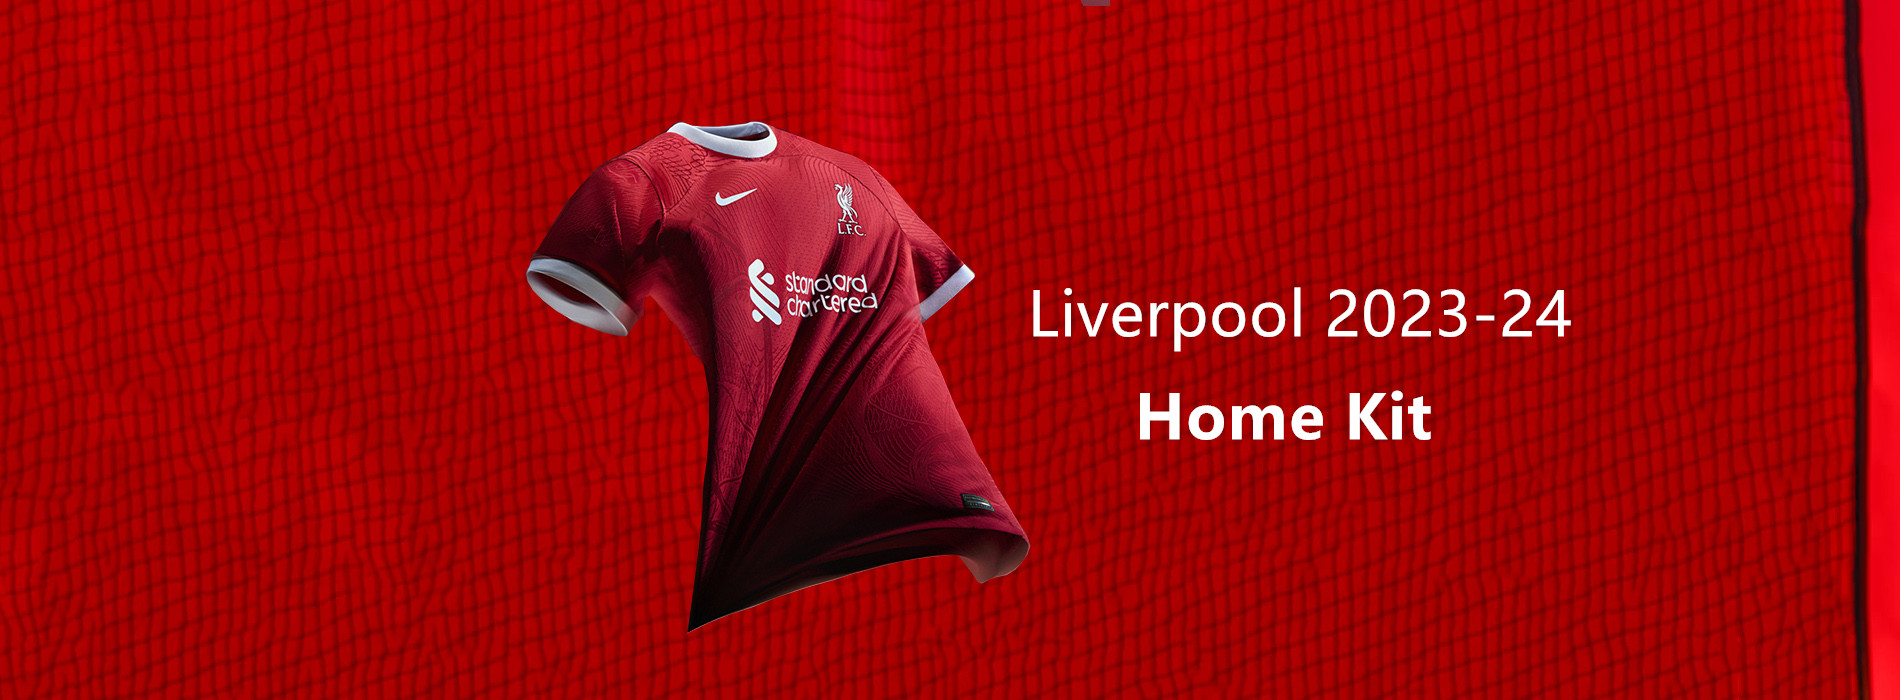 Koszulka Liverpool